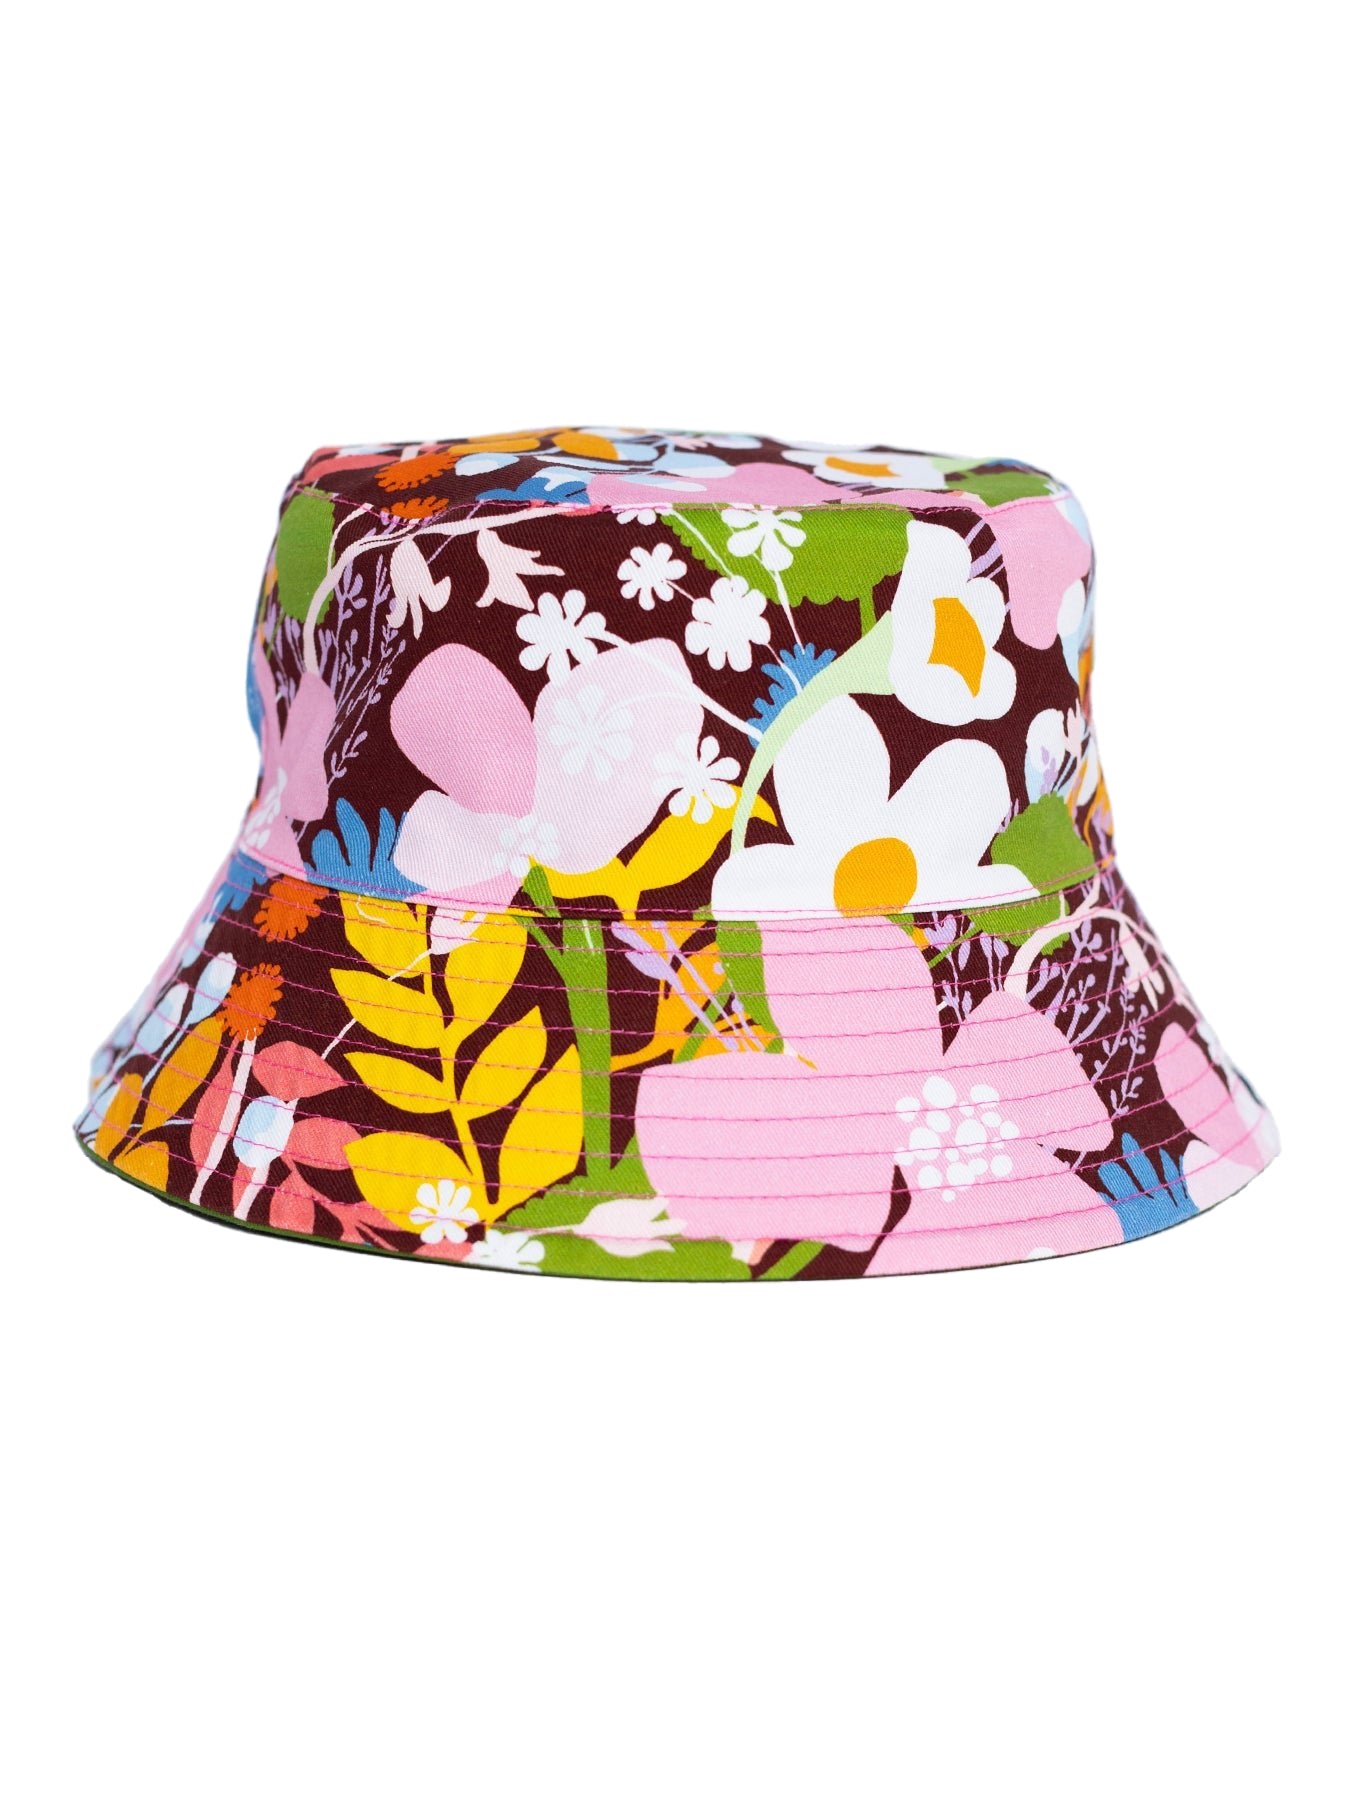 Pesaat Bow Women Bucket Hat (Coffee) - ShopStyle